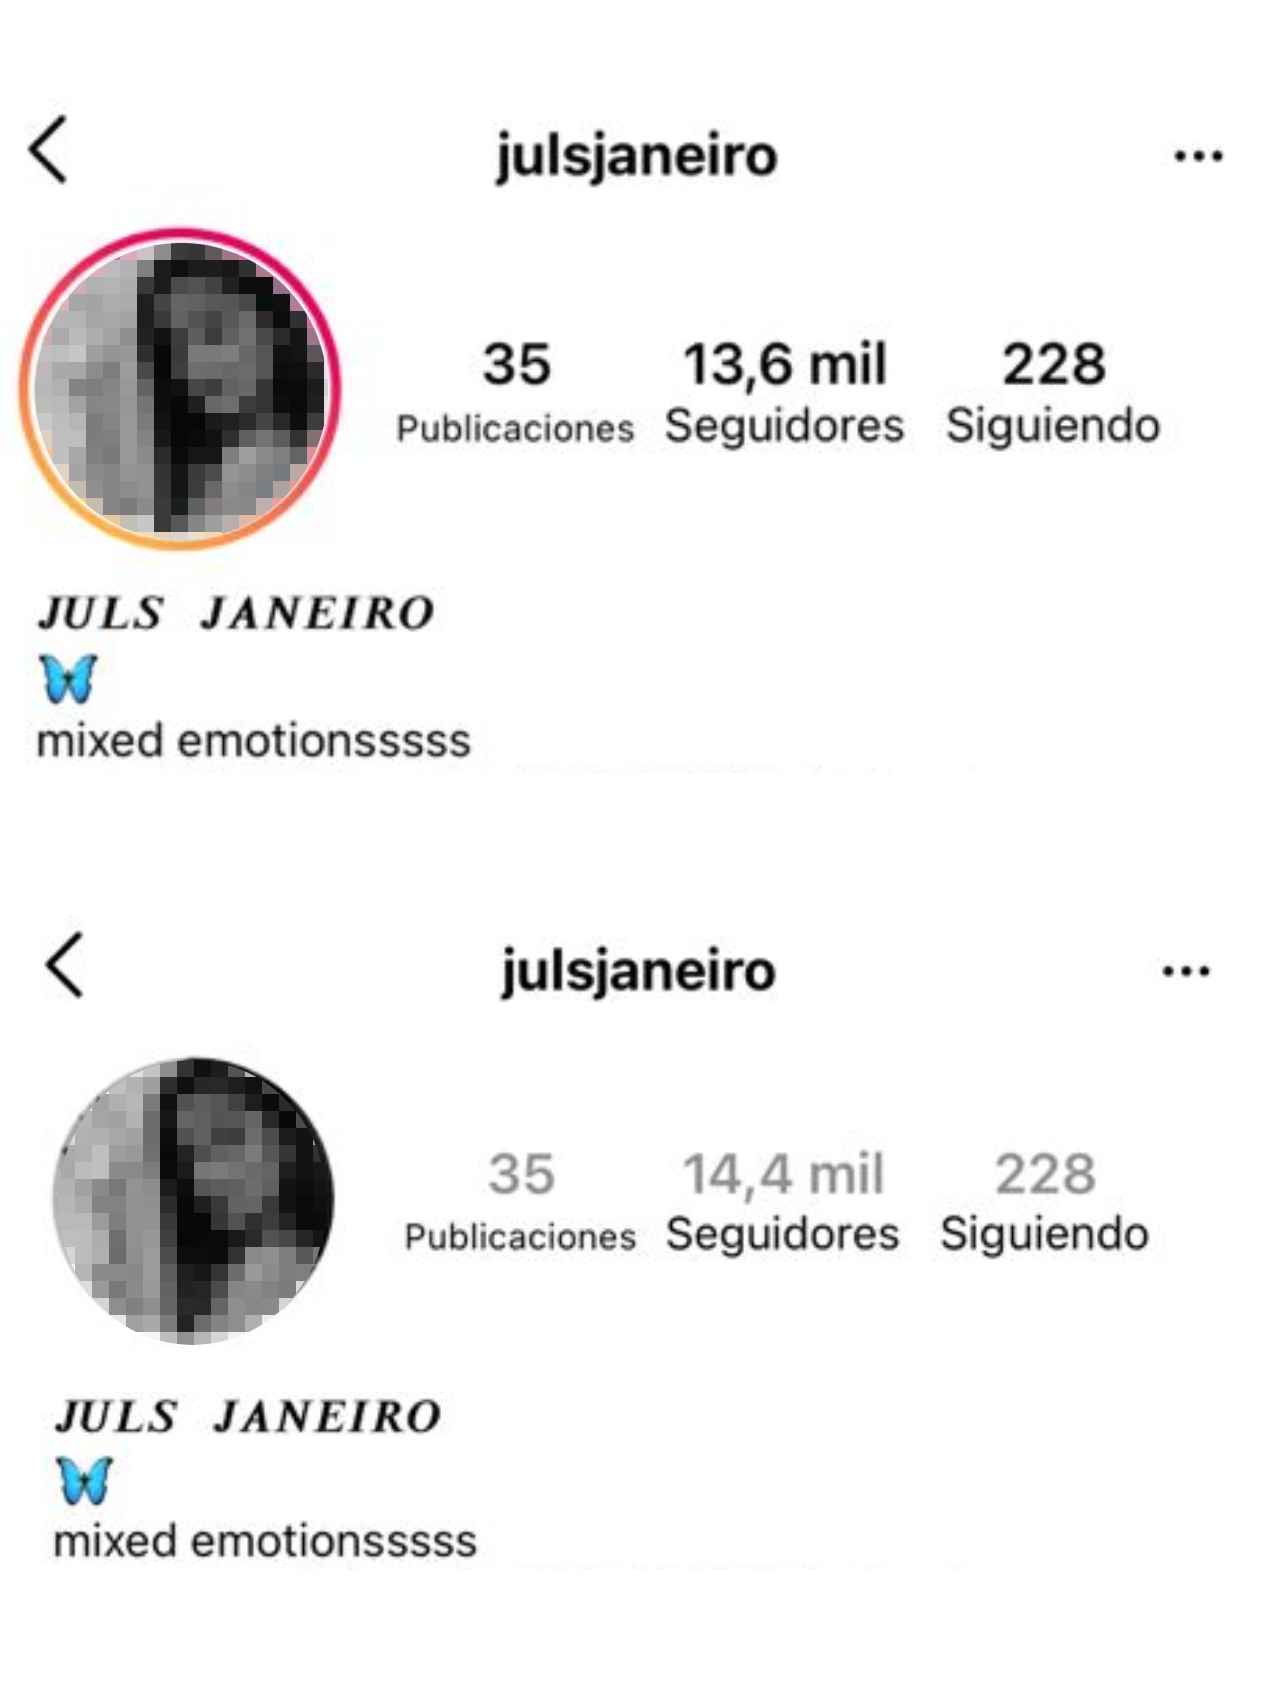 Arriba, el perfil público de Julia Janeiro. Abajo, su cuenta de Instagram privada.